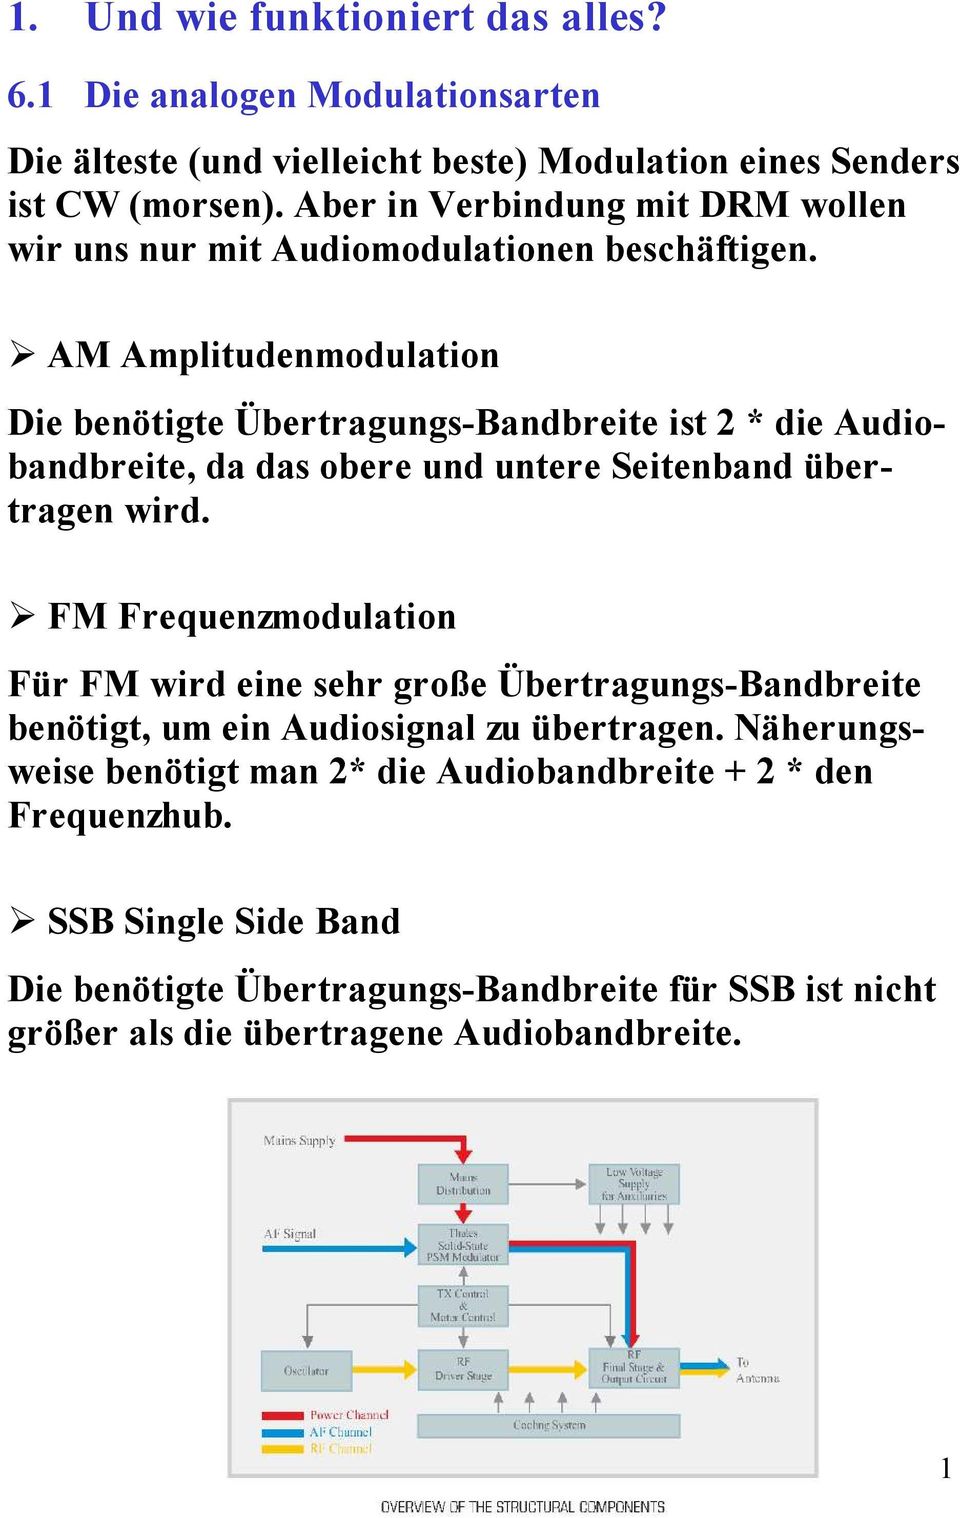 AM Amplitudenmodulation Die benötigte Übertragungs-Bandbreite ist 2 * die Audiobandbreite, da das obere und untere Seitenband übertragen wird.